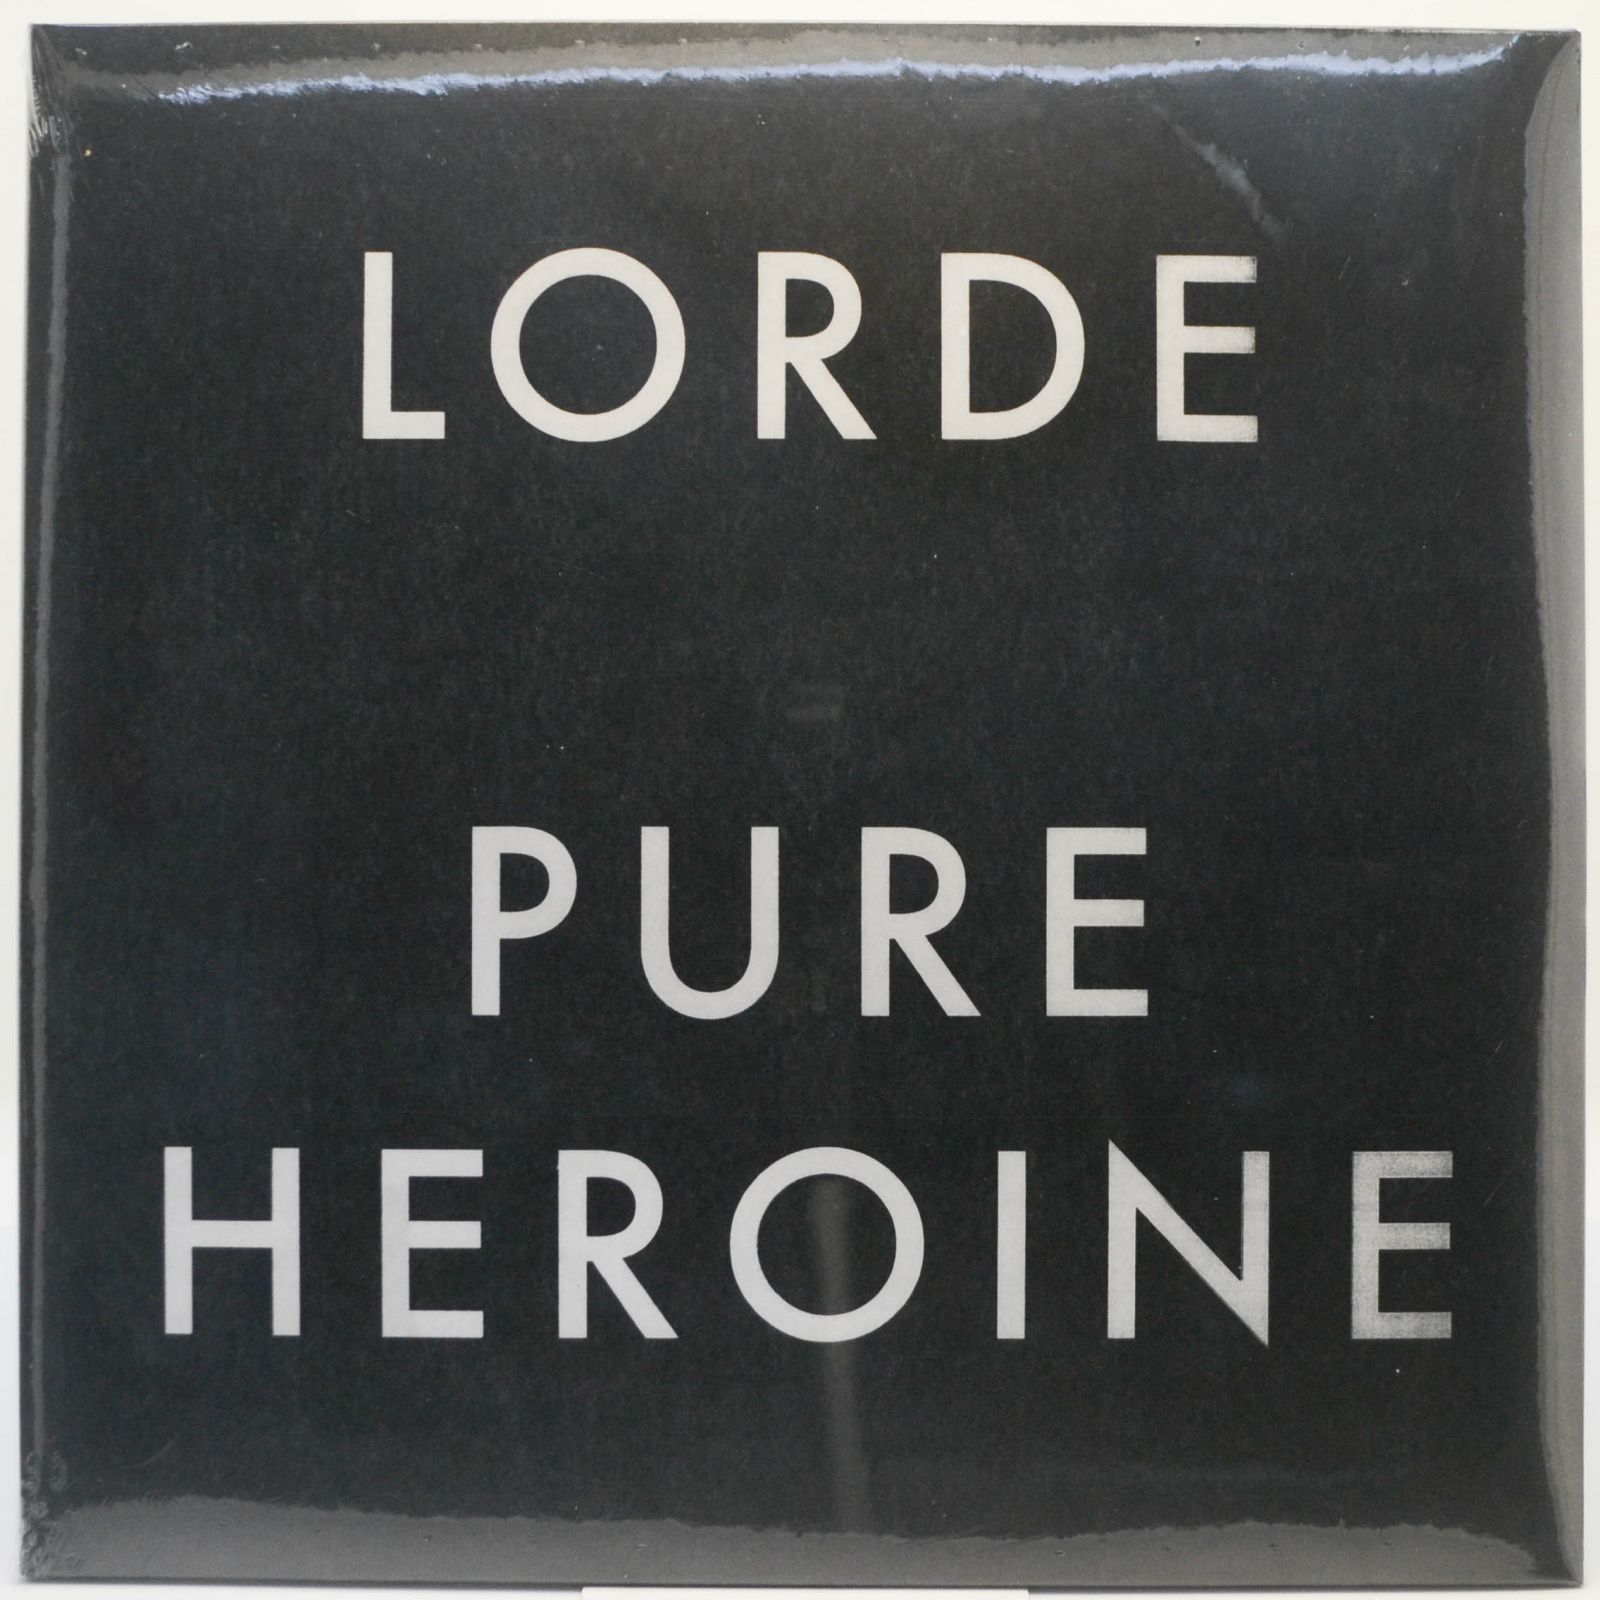 Lorde — Pure Heroine, 2013